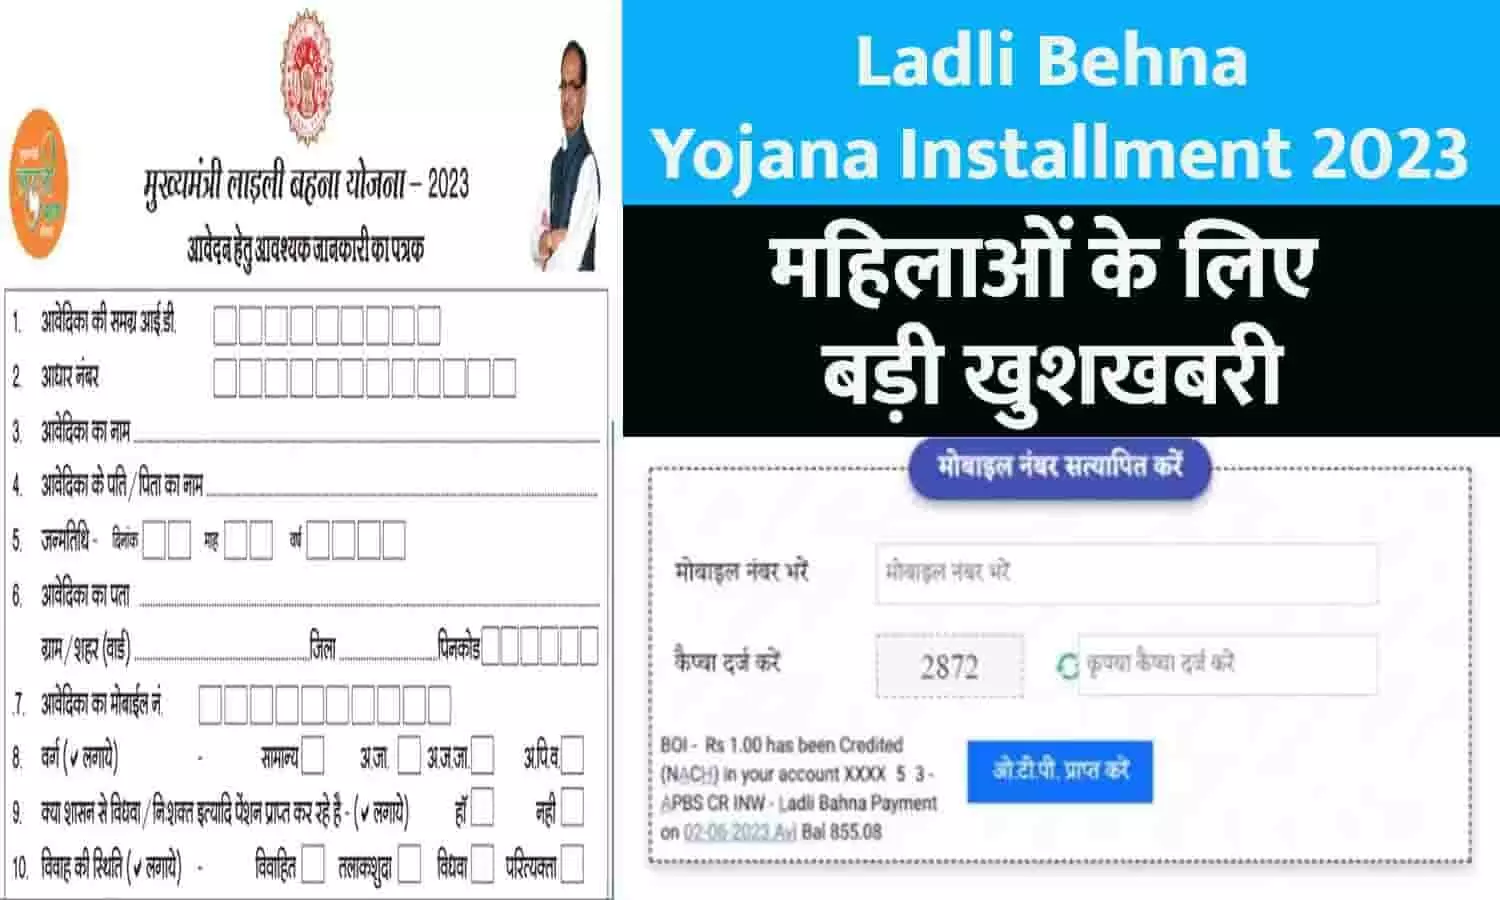 Ladli Behna Yojana Installment 2023: अब महिलाओ के अकाउंट में आएंगे ₹1250,₹1500, ₹1750, ₹2000, ₹2250, ₹2500, ₹2750 और फिर ₹3000